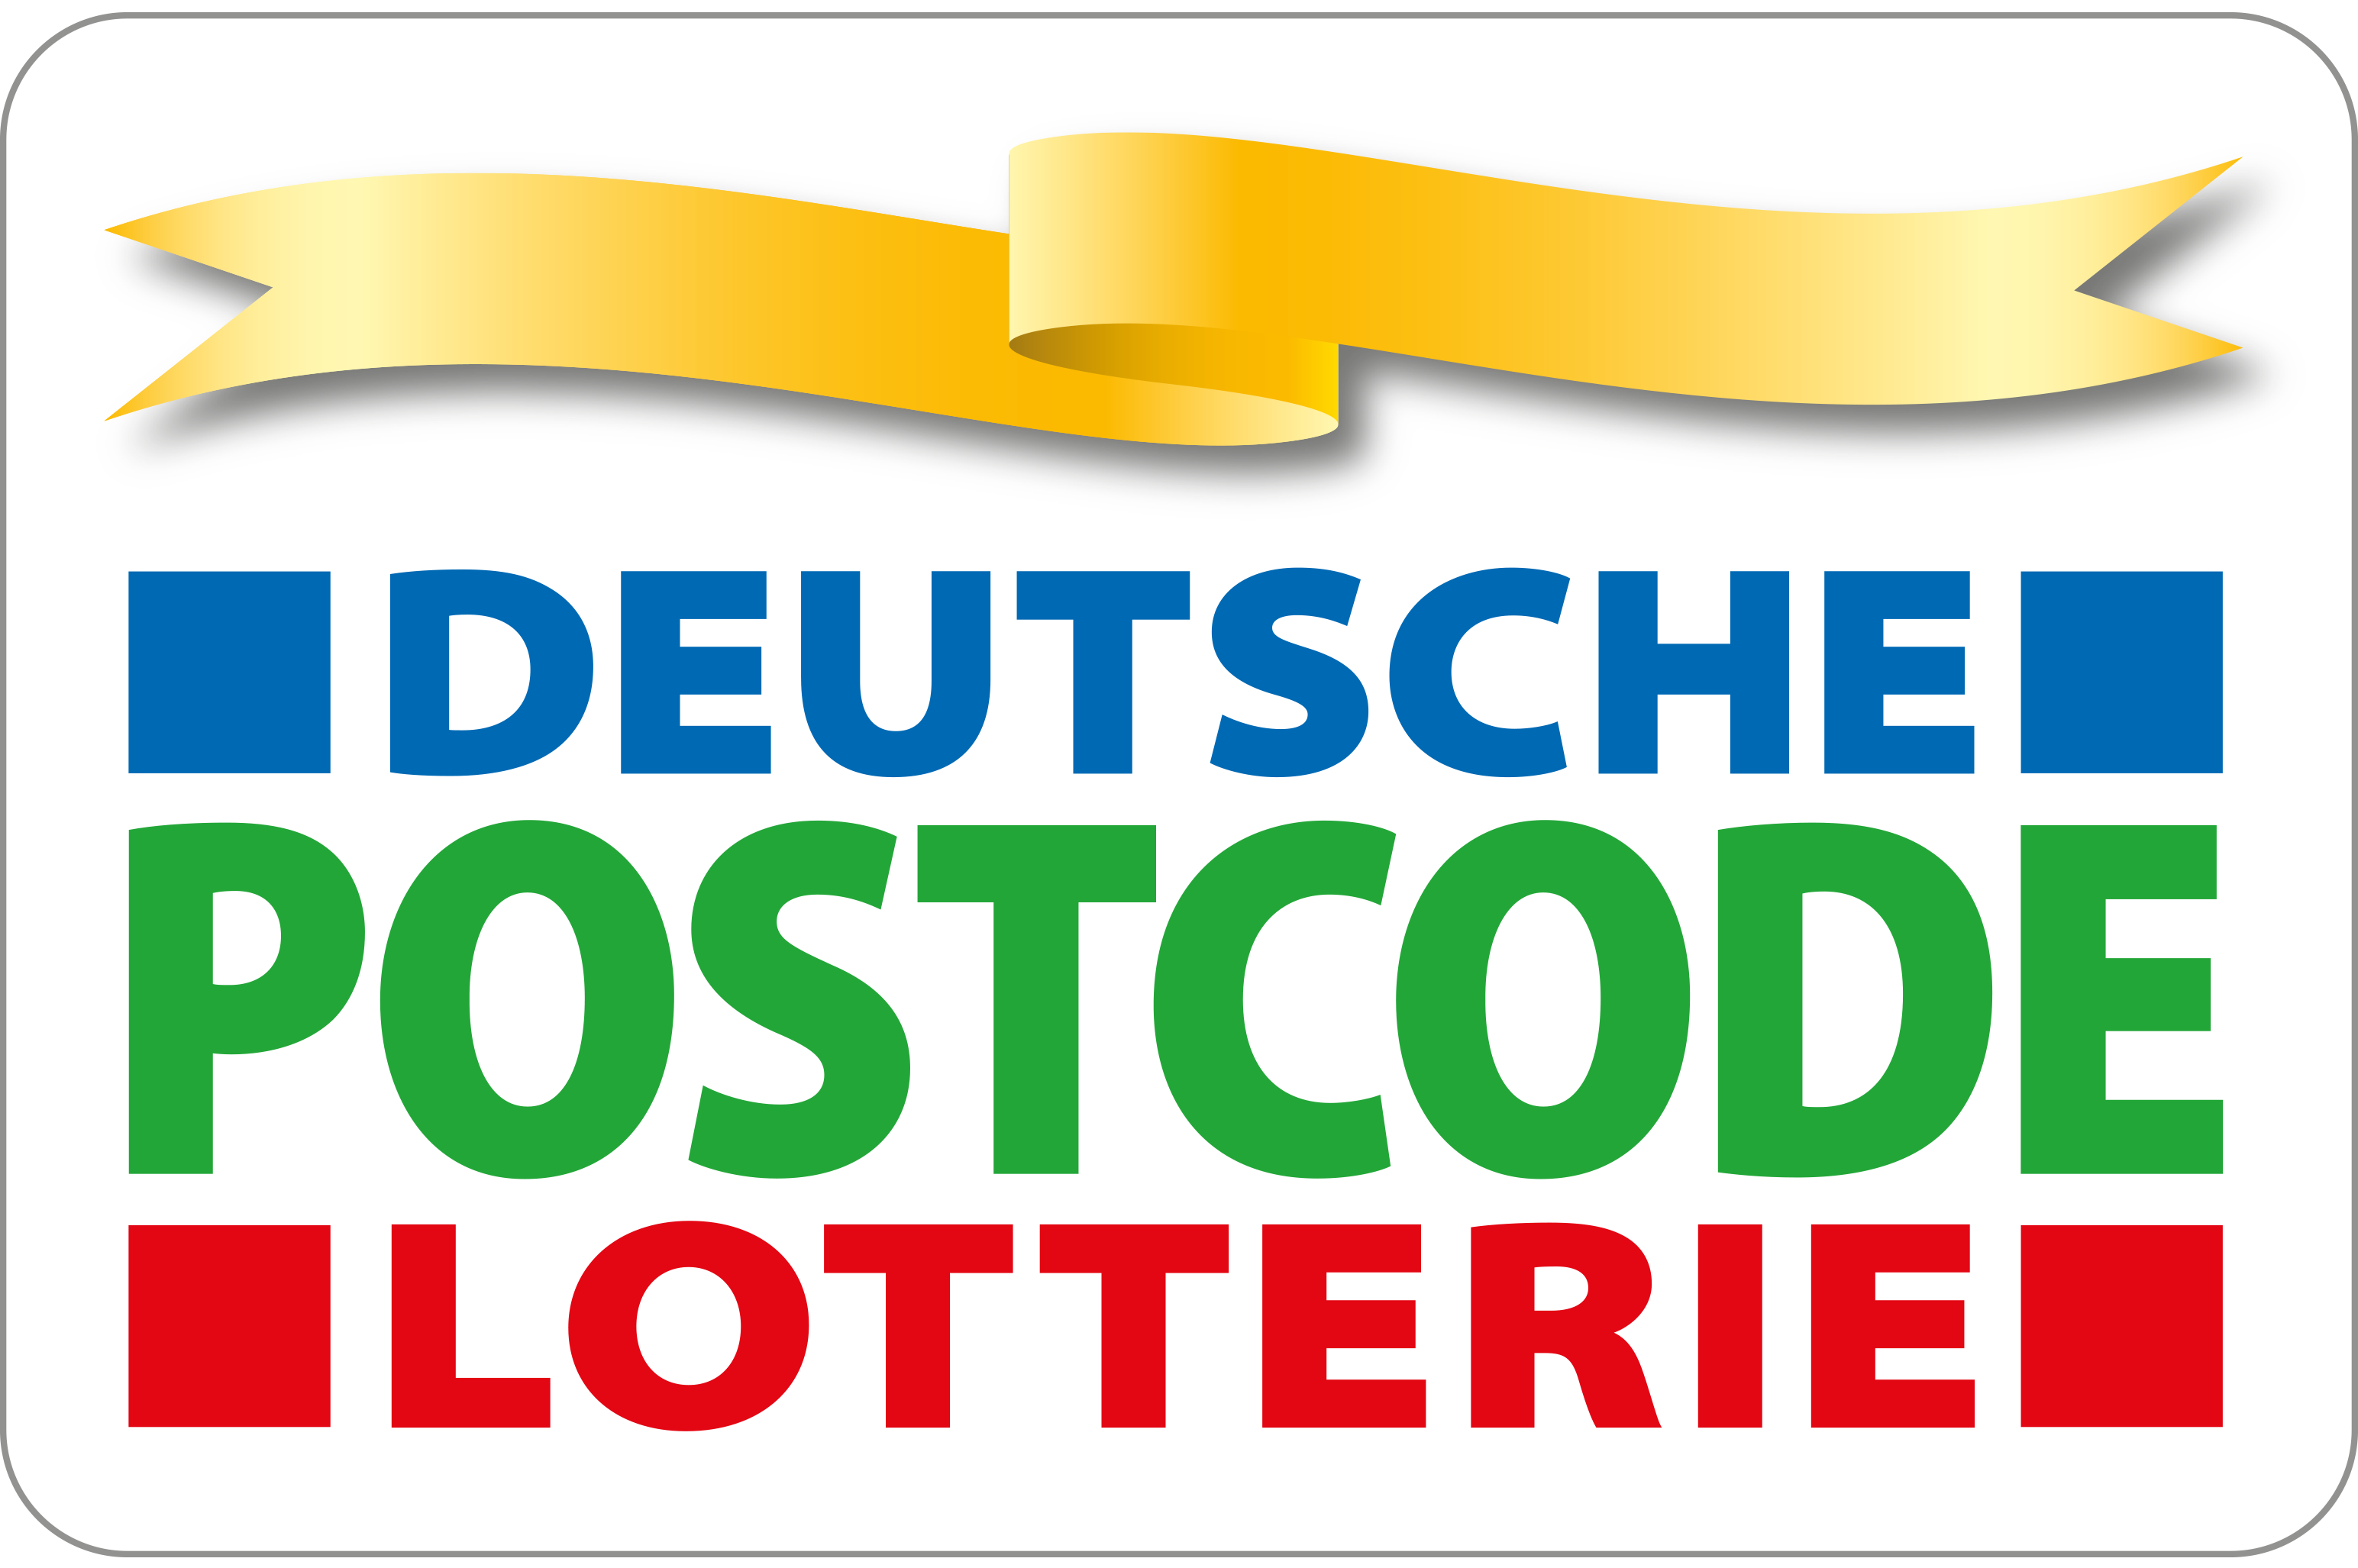 Deutsche Postcode Lotterie unterstützt ASB-Besuchshundedienst mit 14 000 €